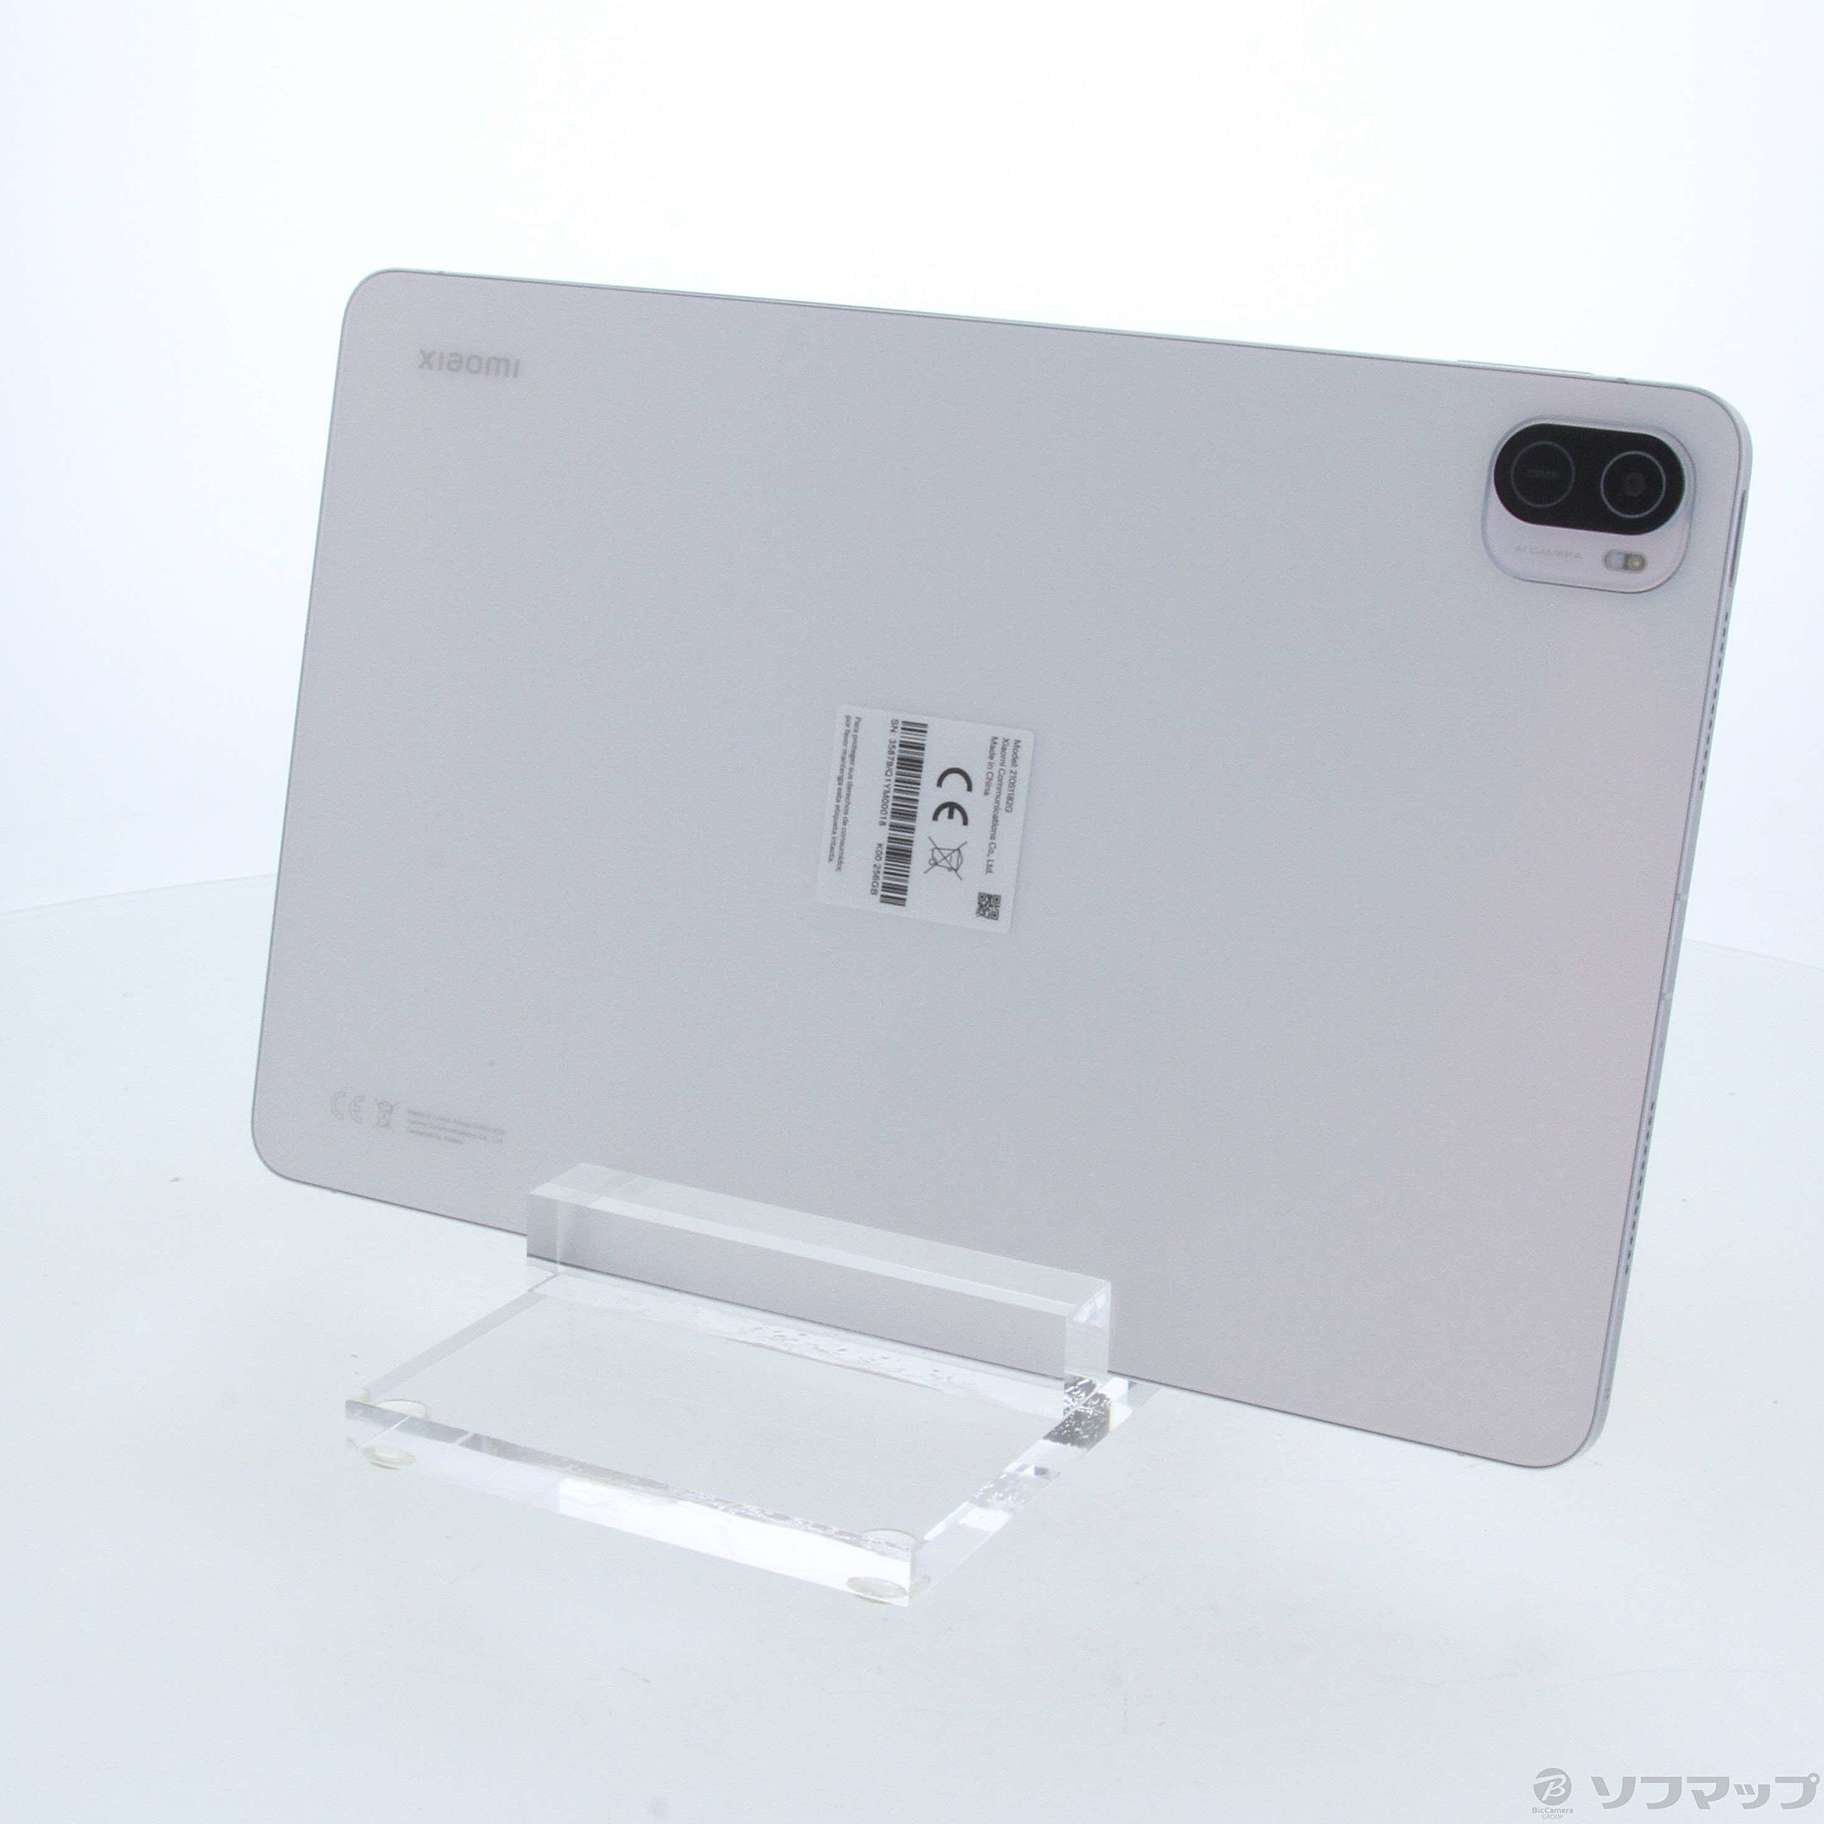 シャオミ Xiaomi Pad 5 256GB ホワイト 新品